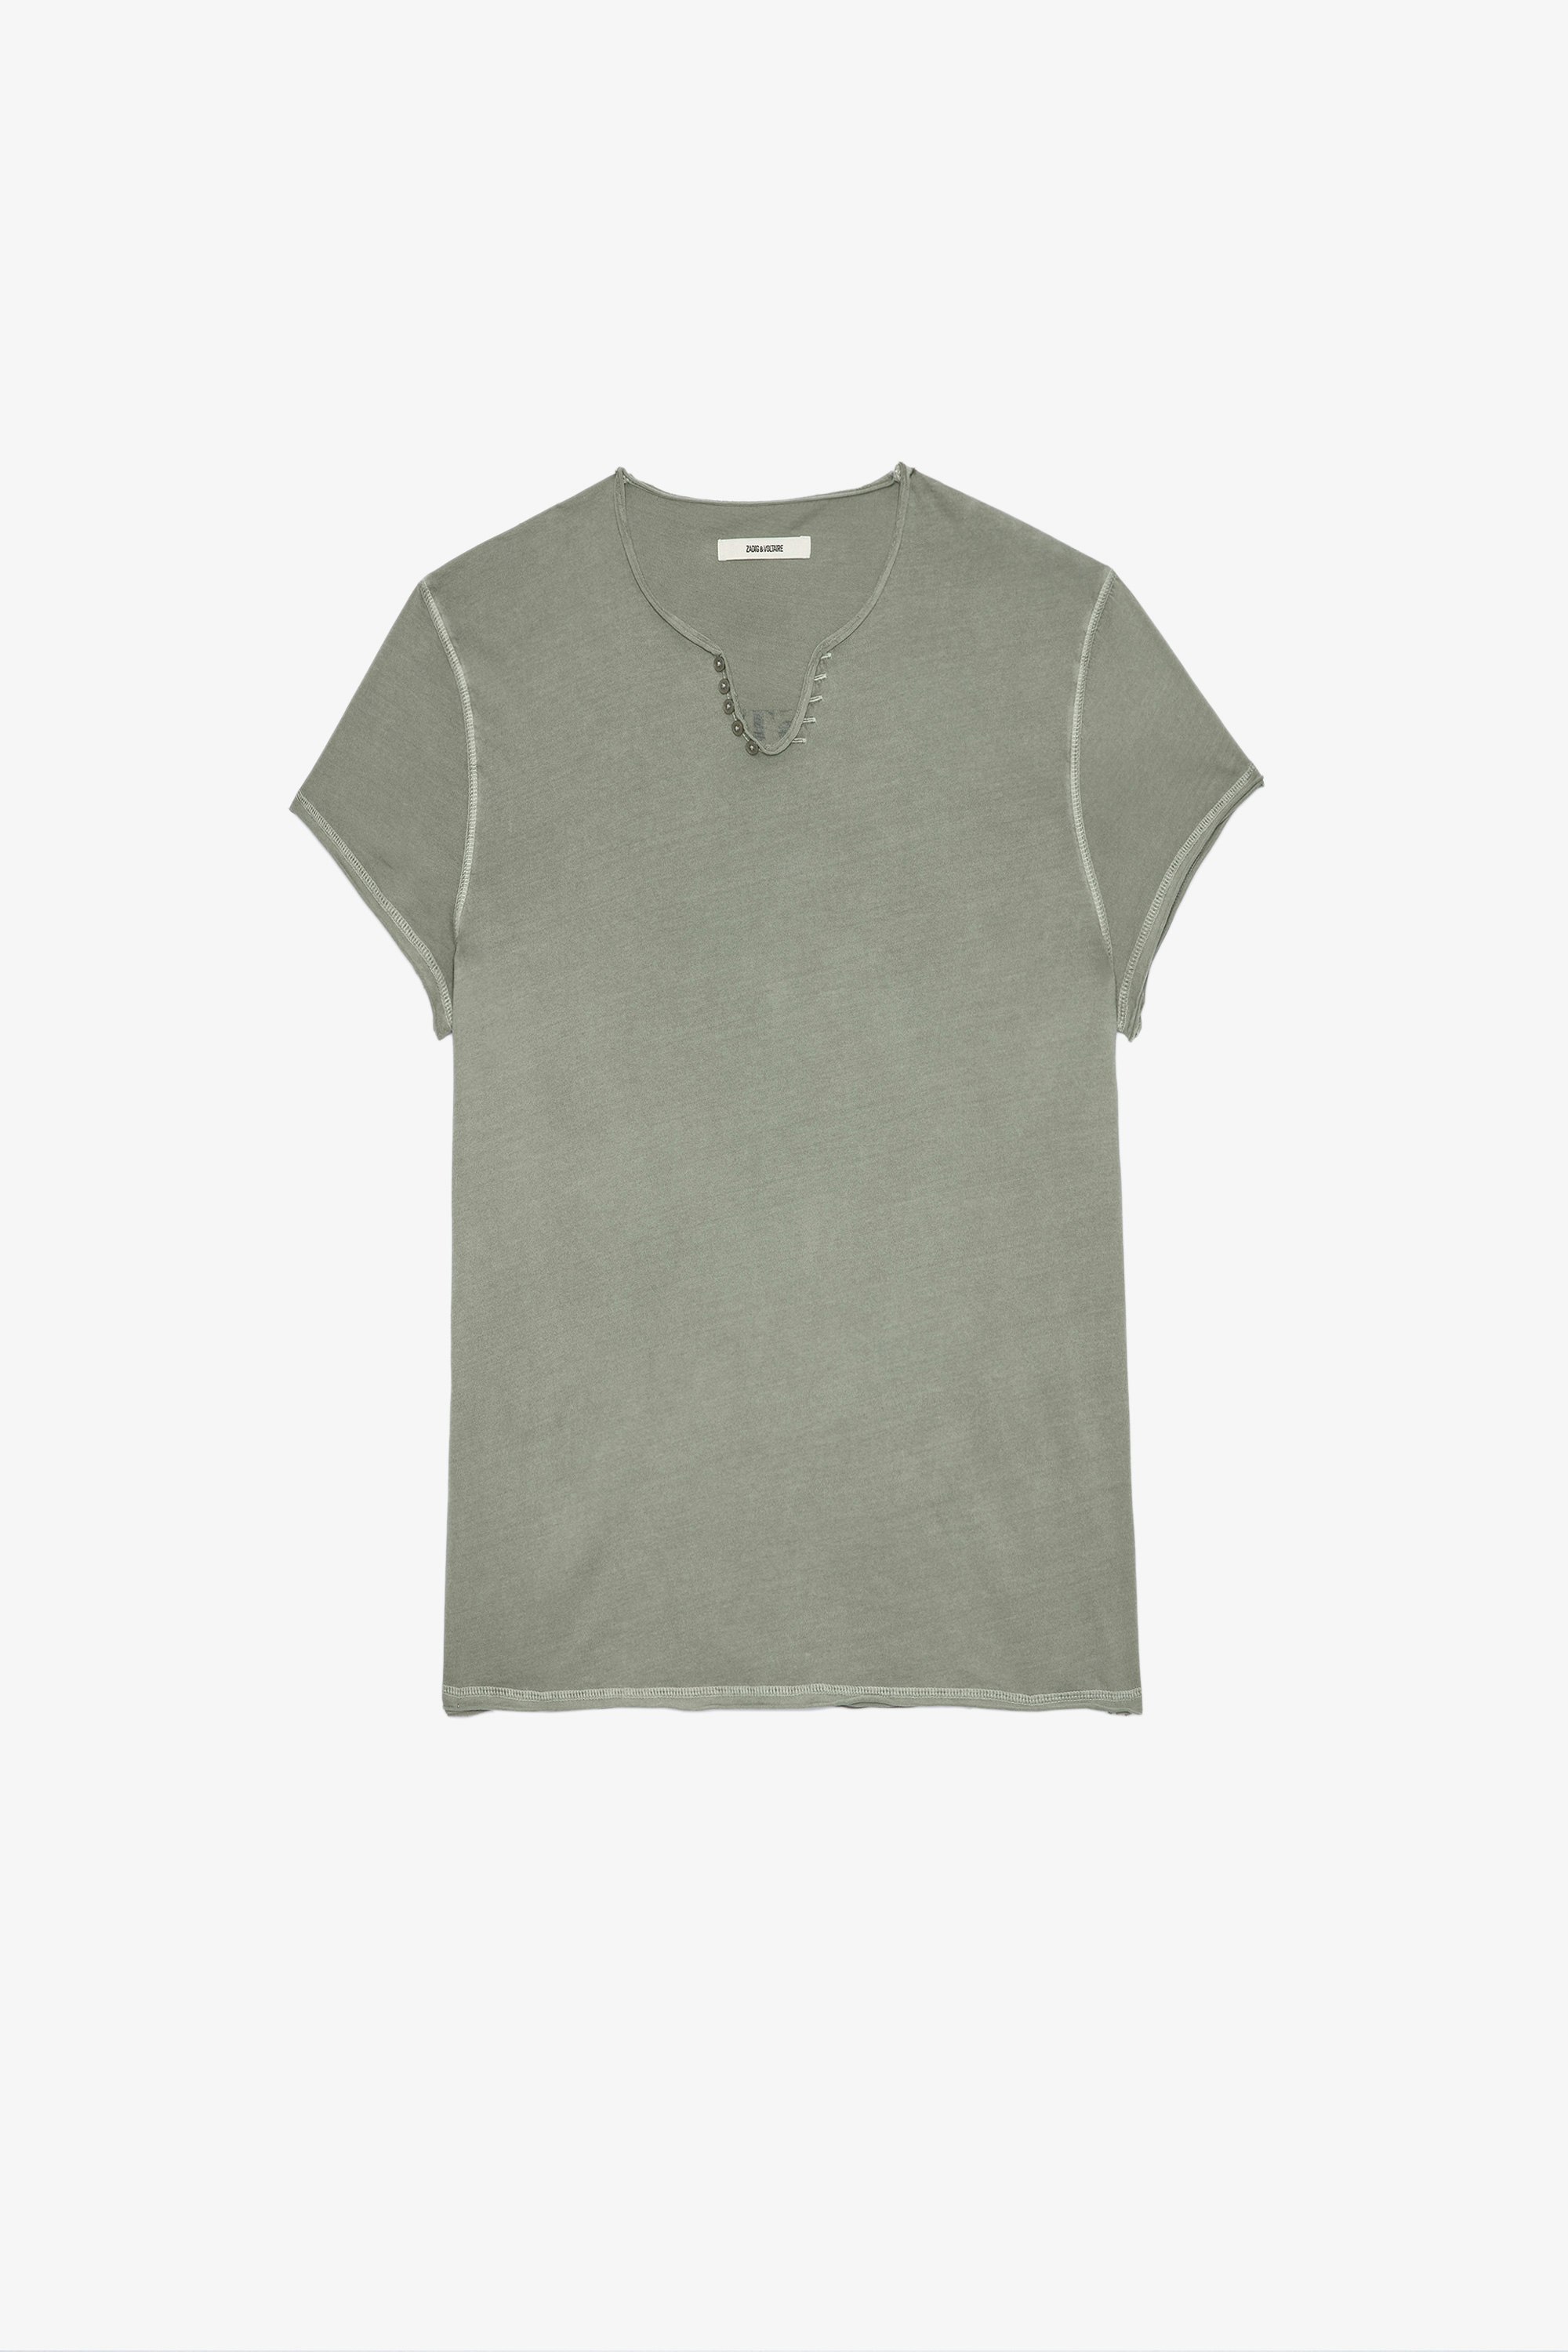 T-Shirt Monastir Kurzärmeliges Herren-T-Shirt aus grüner Baumwolle mit Henley-Ausschnitt und Botschaft auf dem Rücken